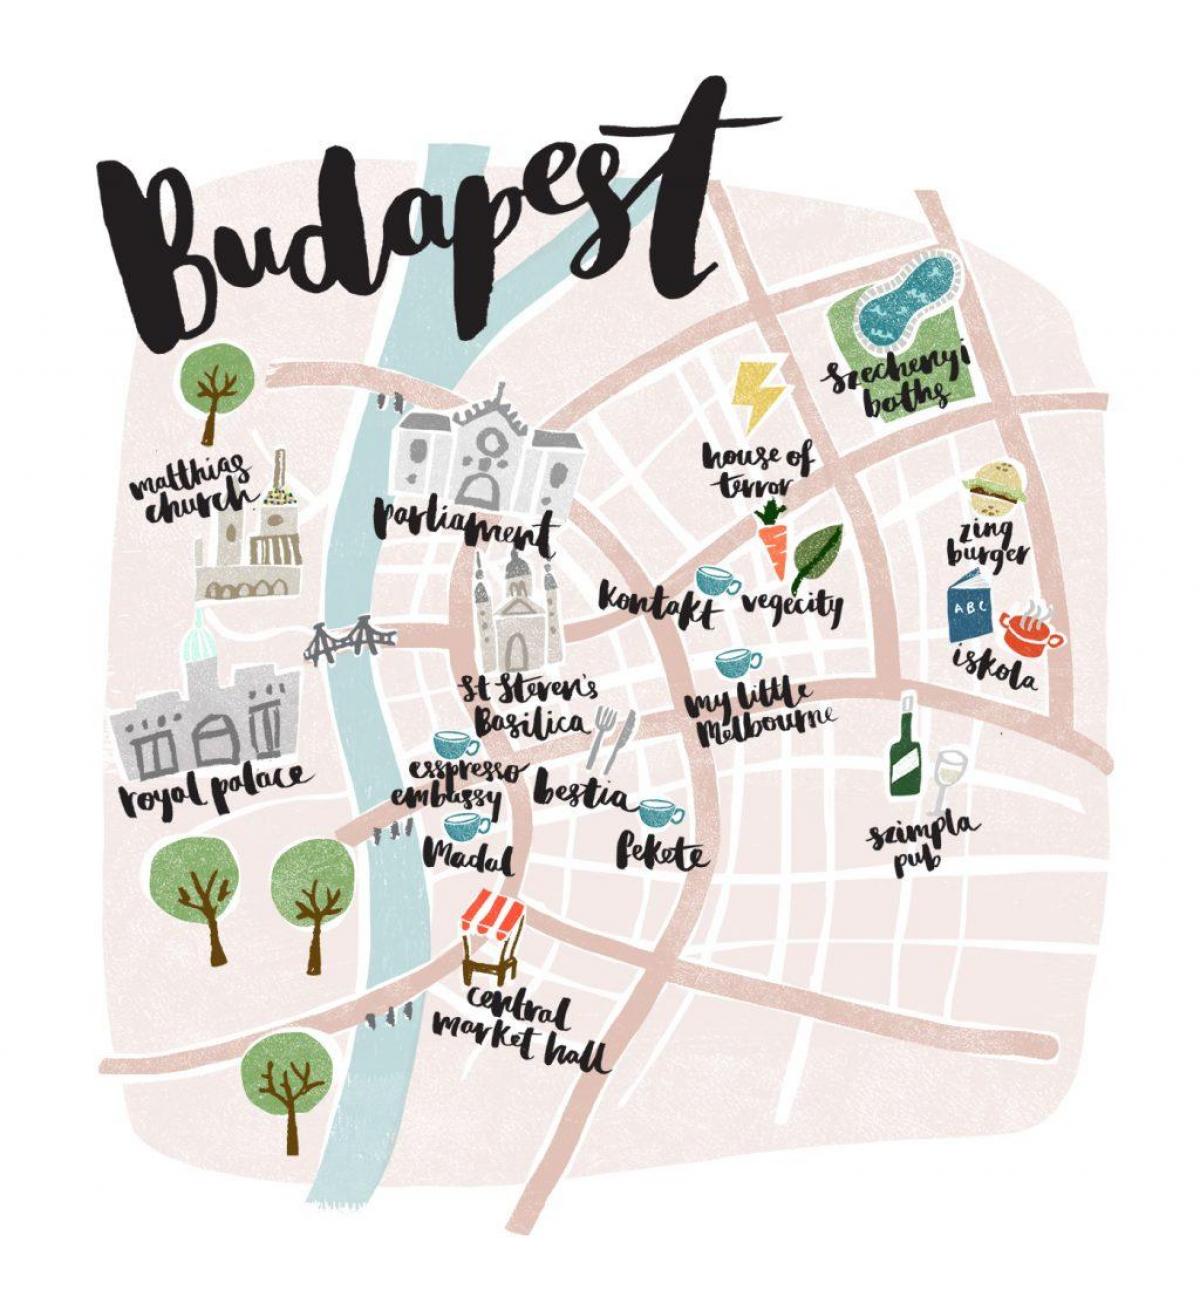 harta e budapest në linjë